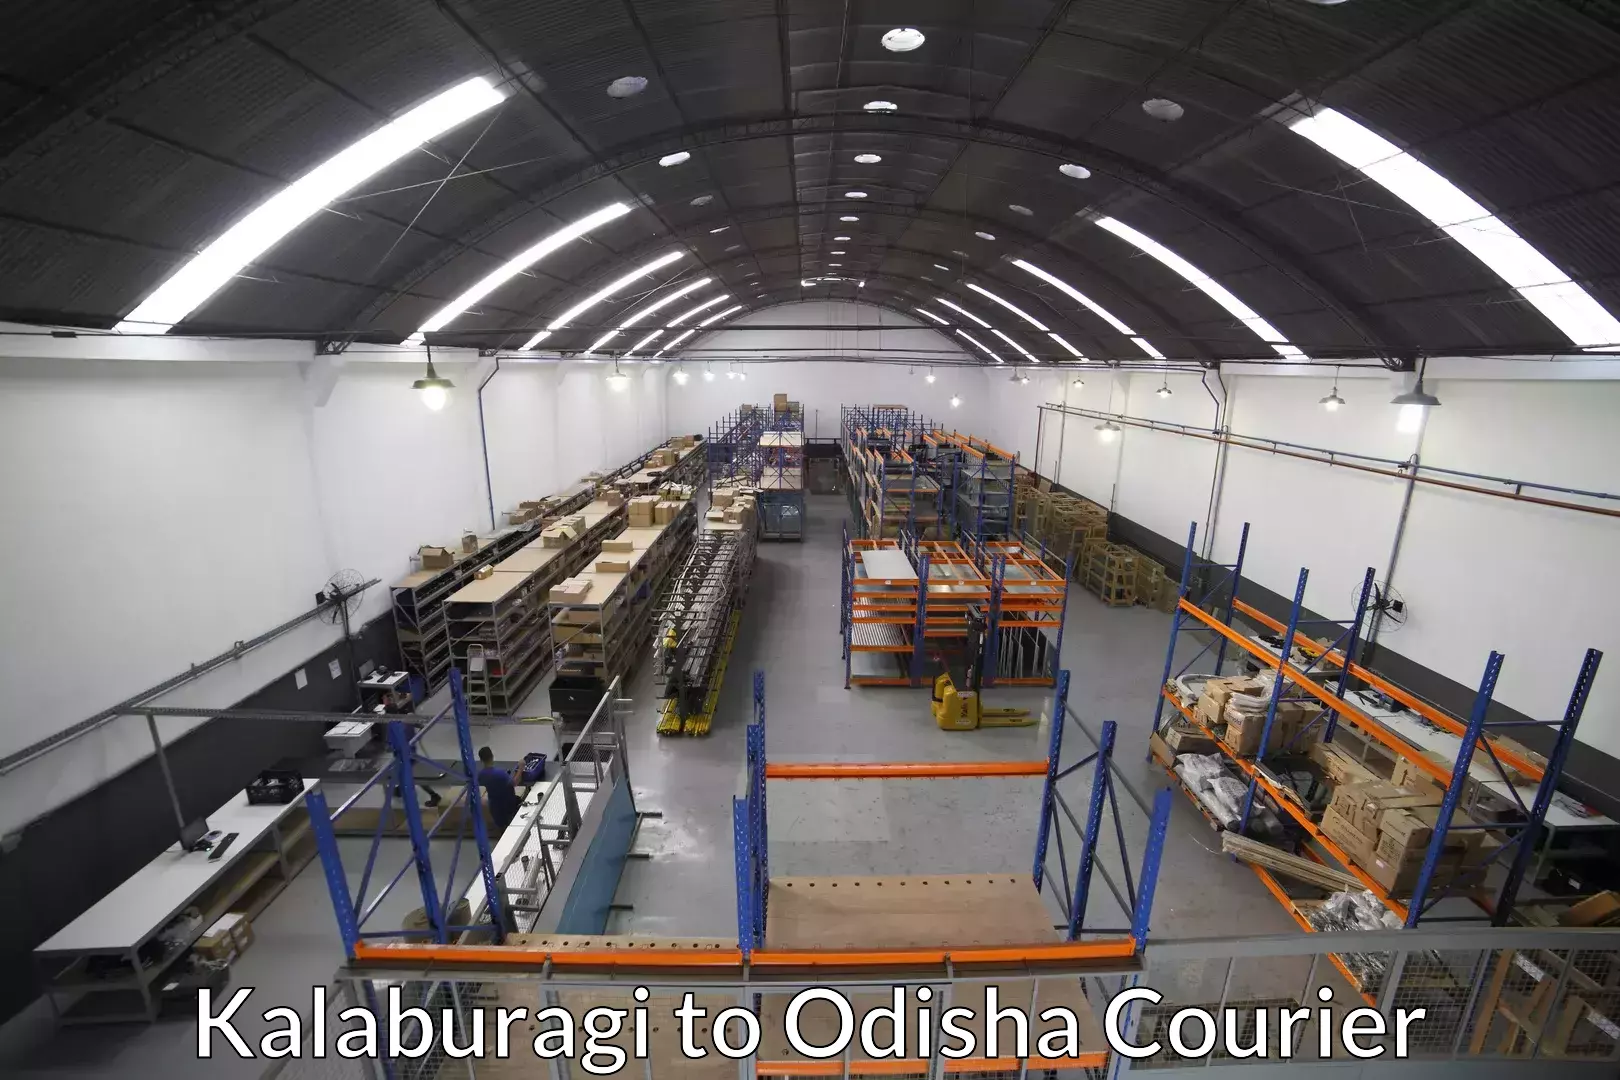 Furniture relocation services Kalaburagi to Telkoi